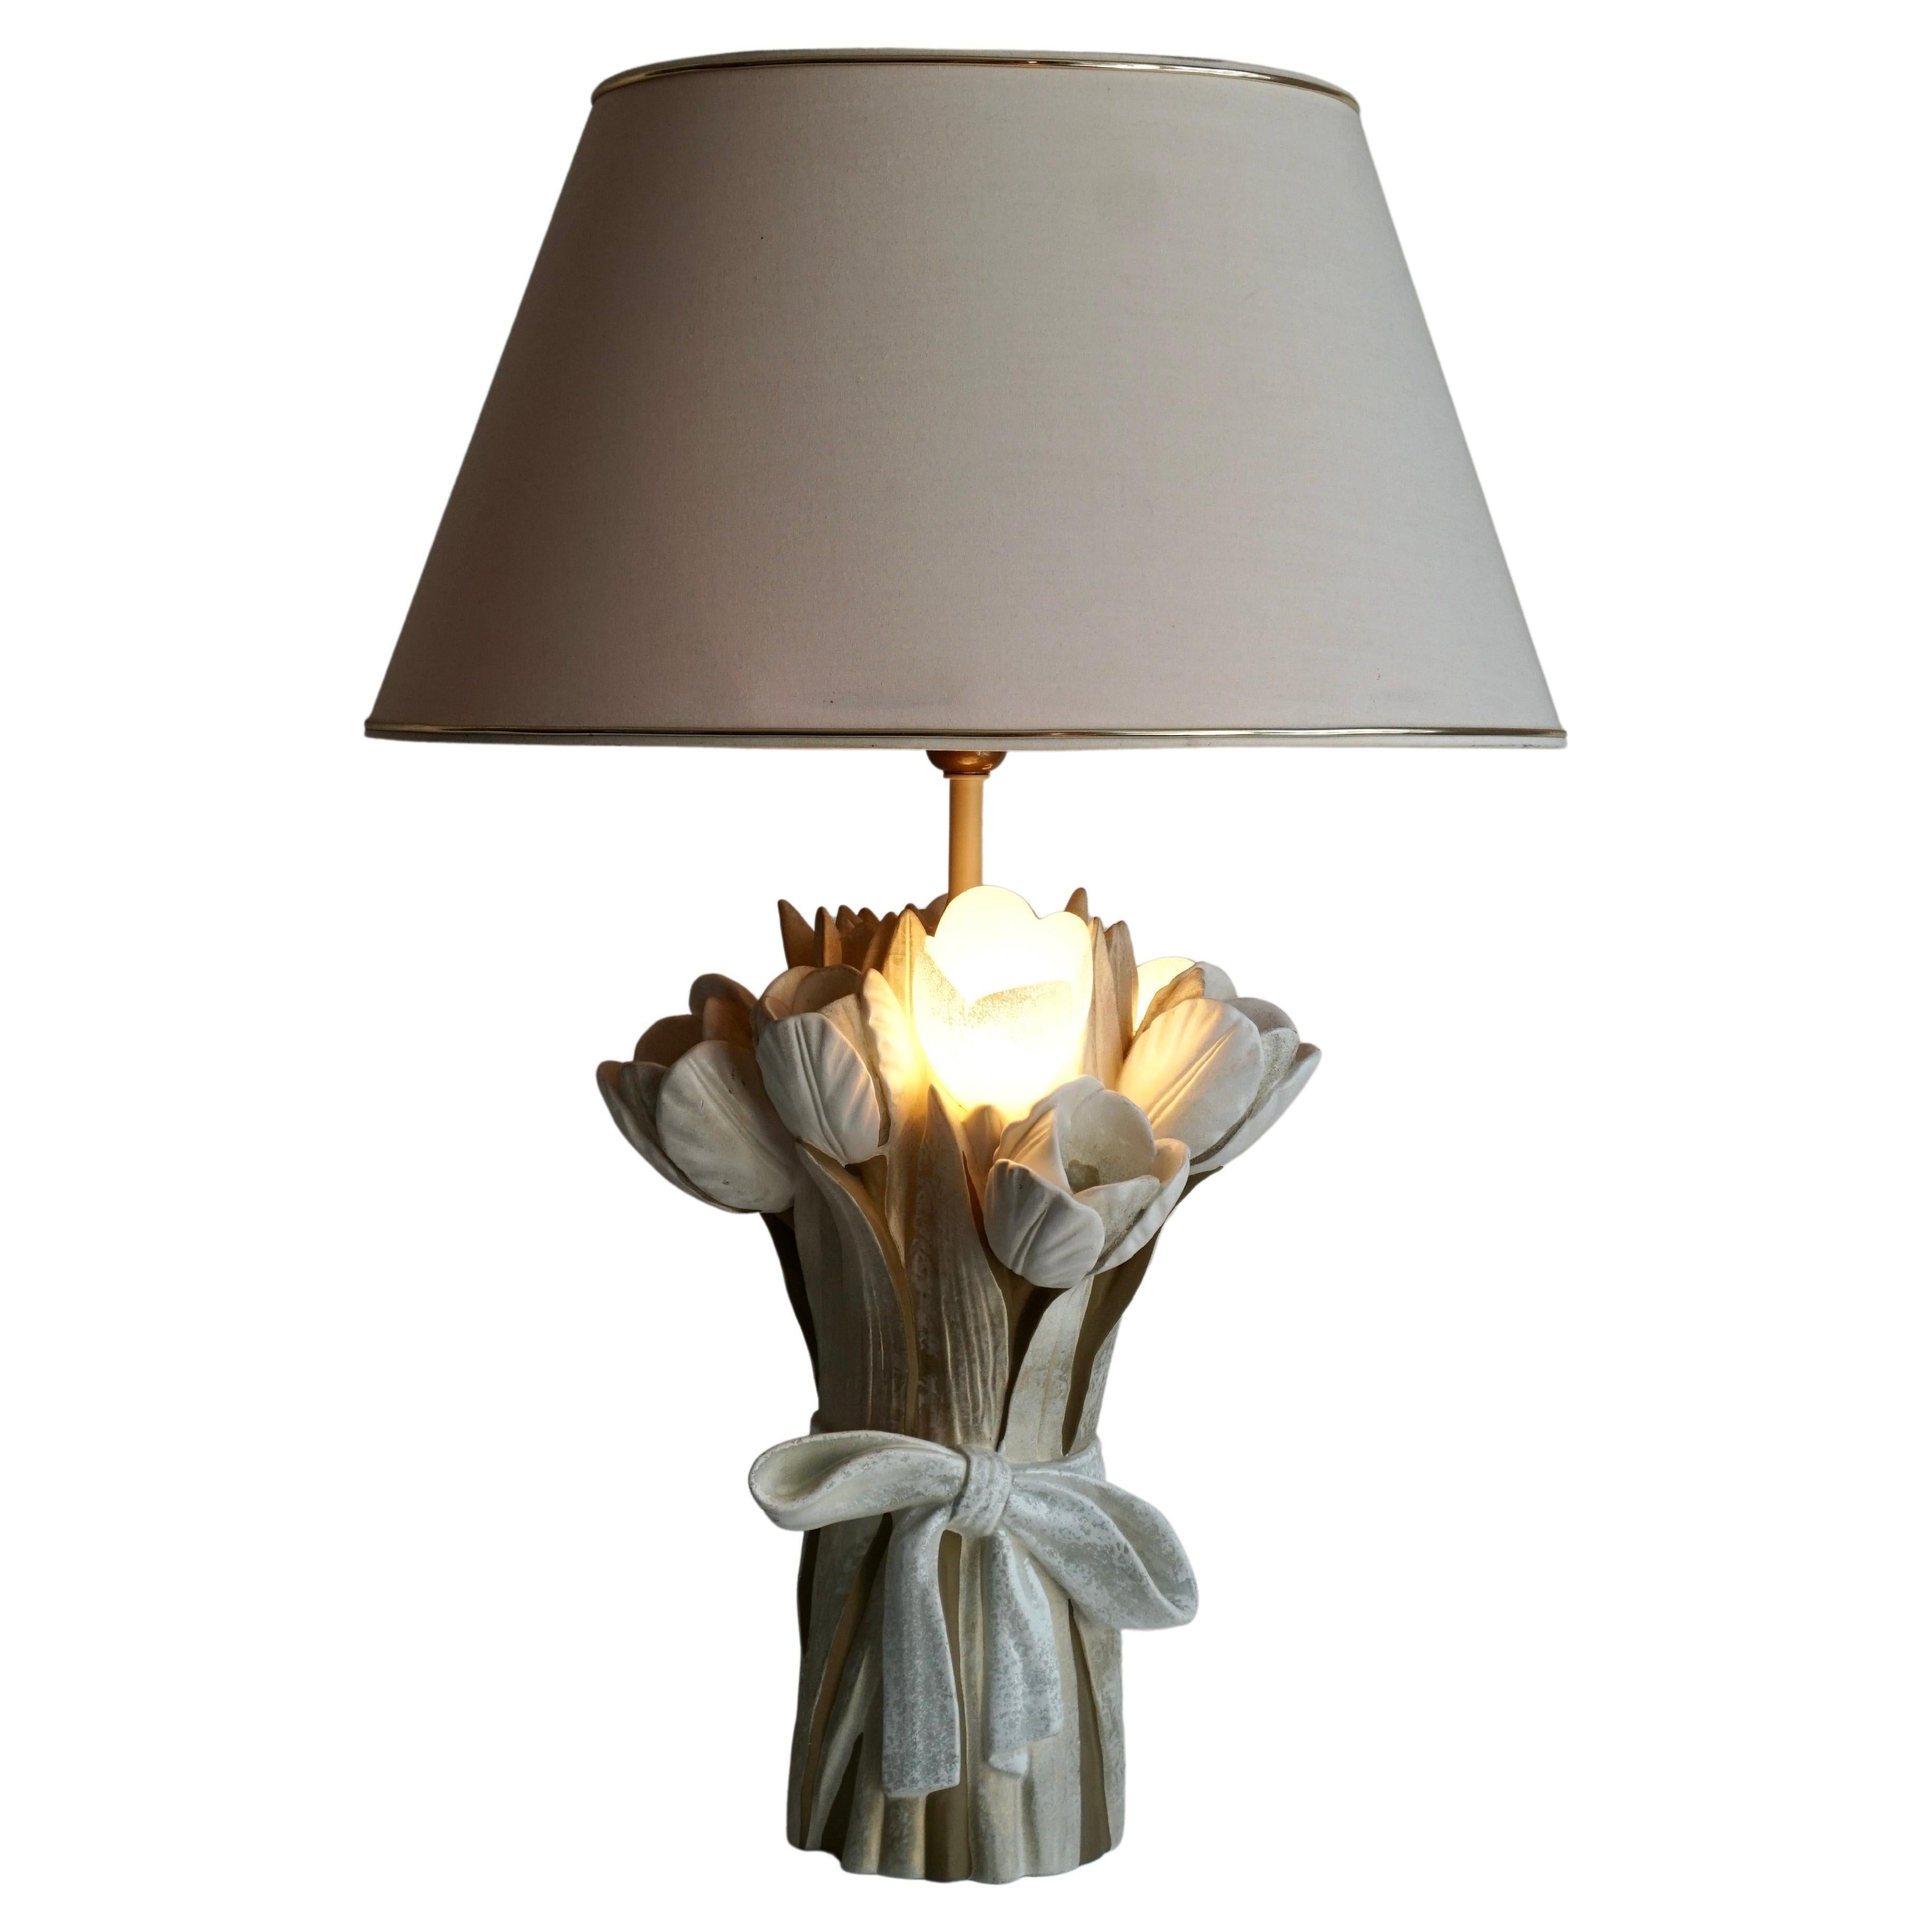 Lampe de table en céramique en forme de bouquet de tulipes.

Hauteur avec abat-jour 28.7